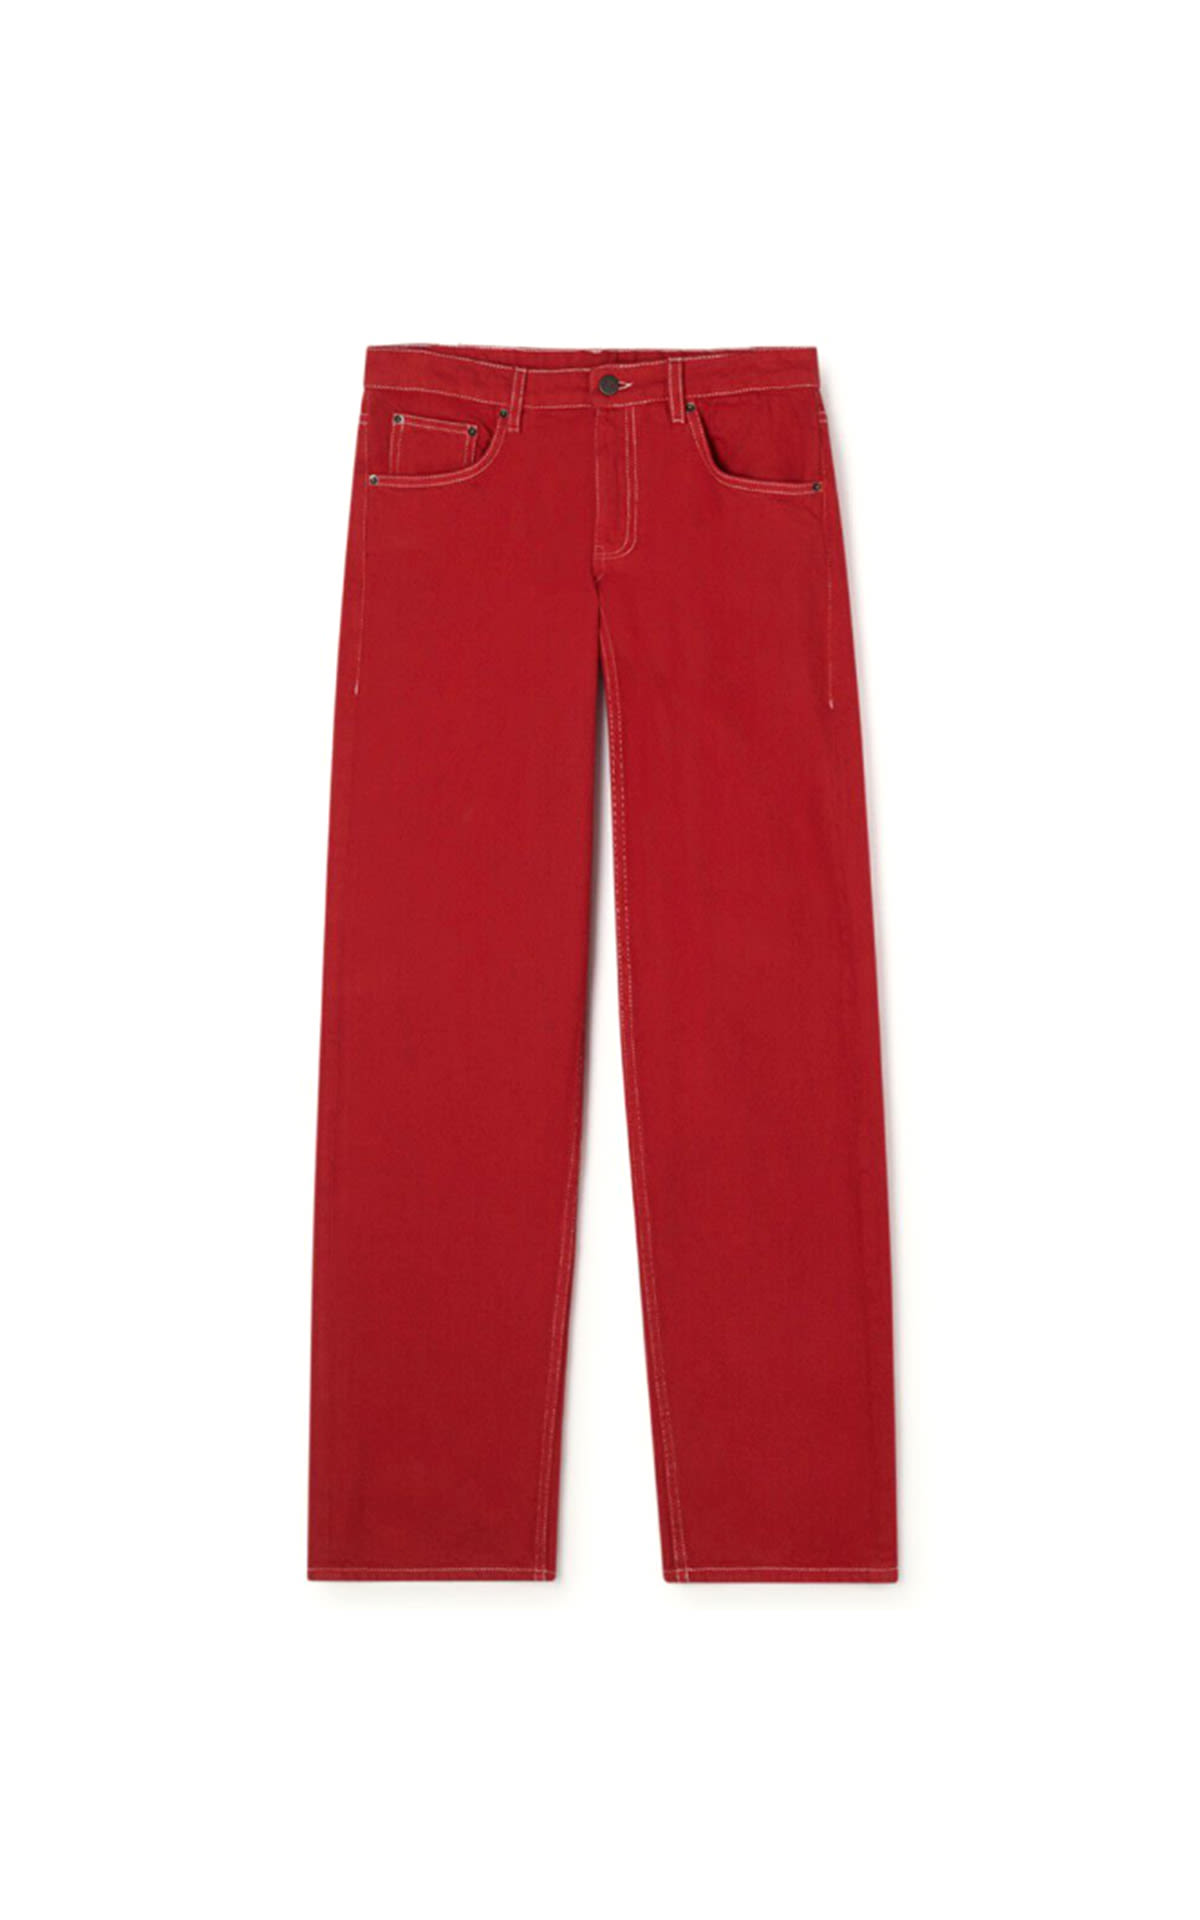 American Vintage Red jean pants